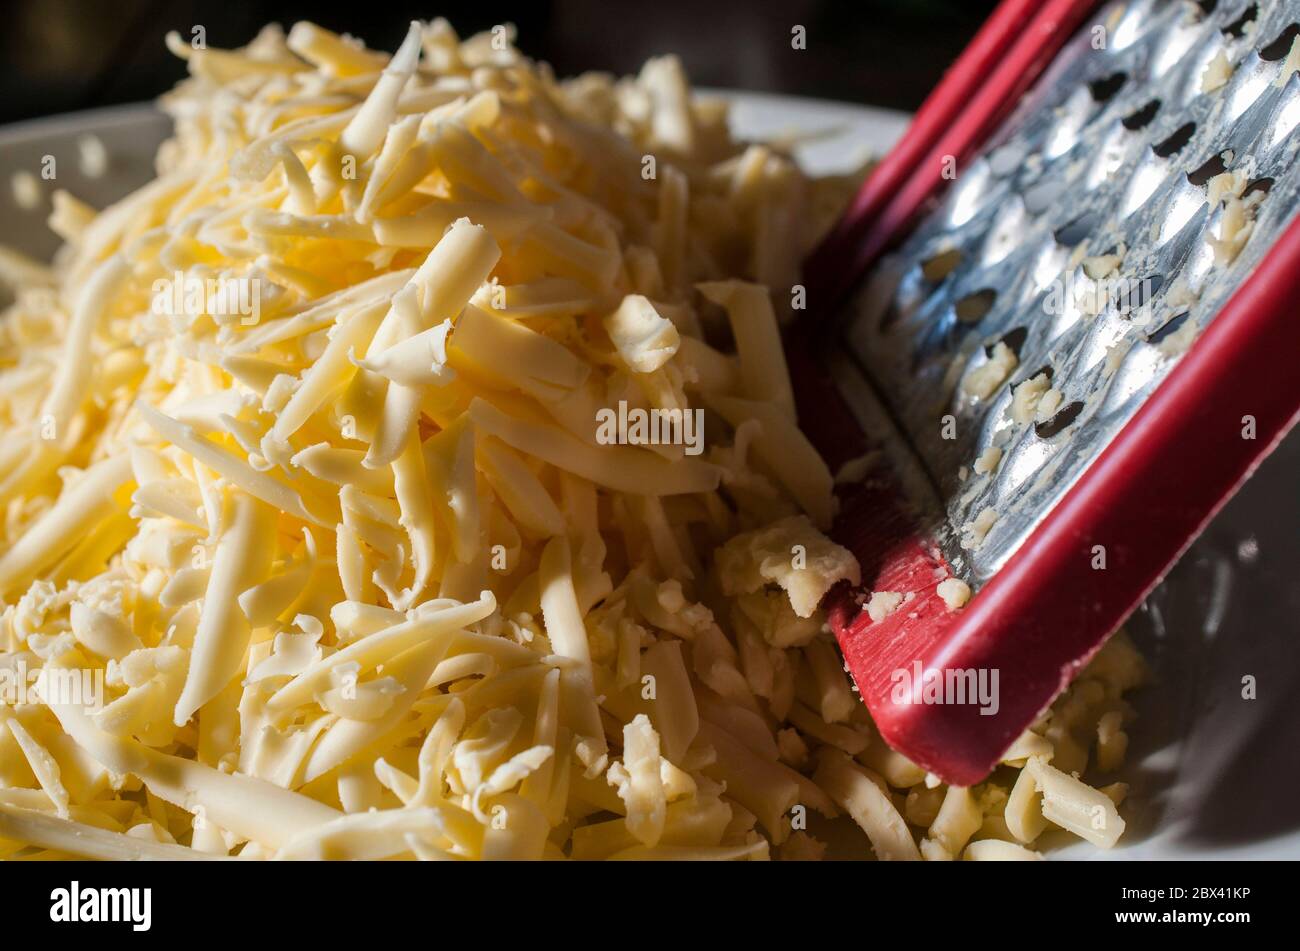 Nahaufnahme oder Makrofotografie von zerfetztem Käse auf einer weißen Platte Stockfoto